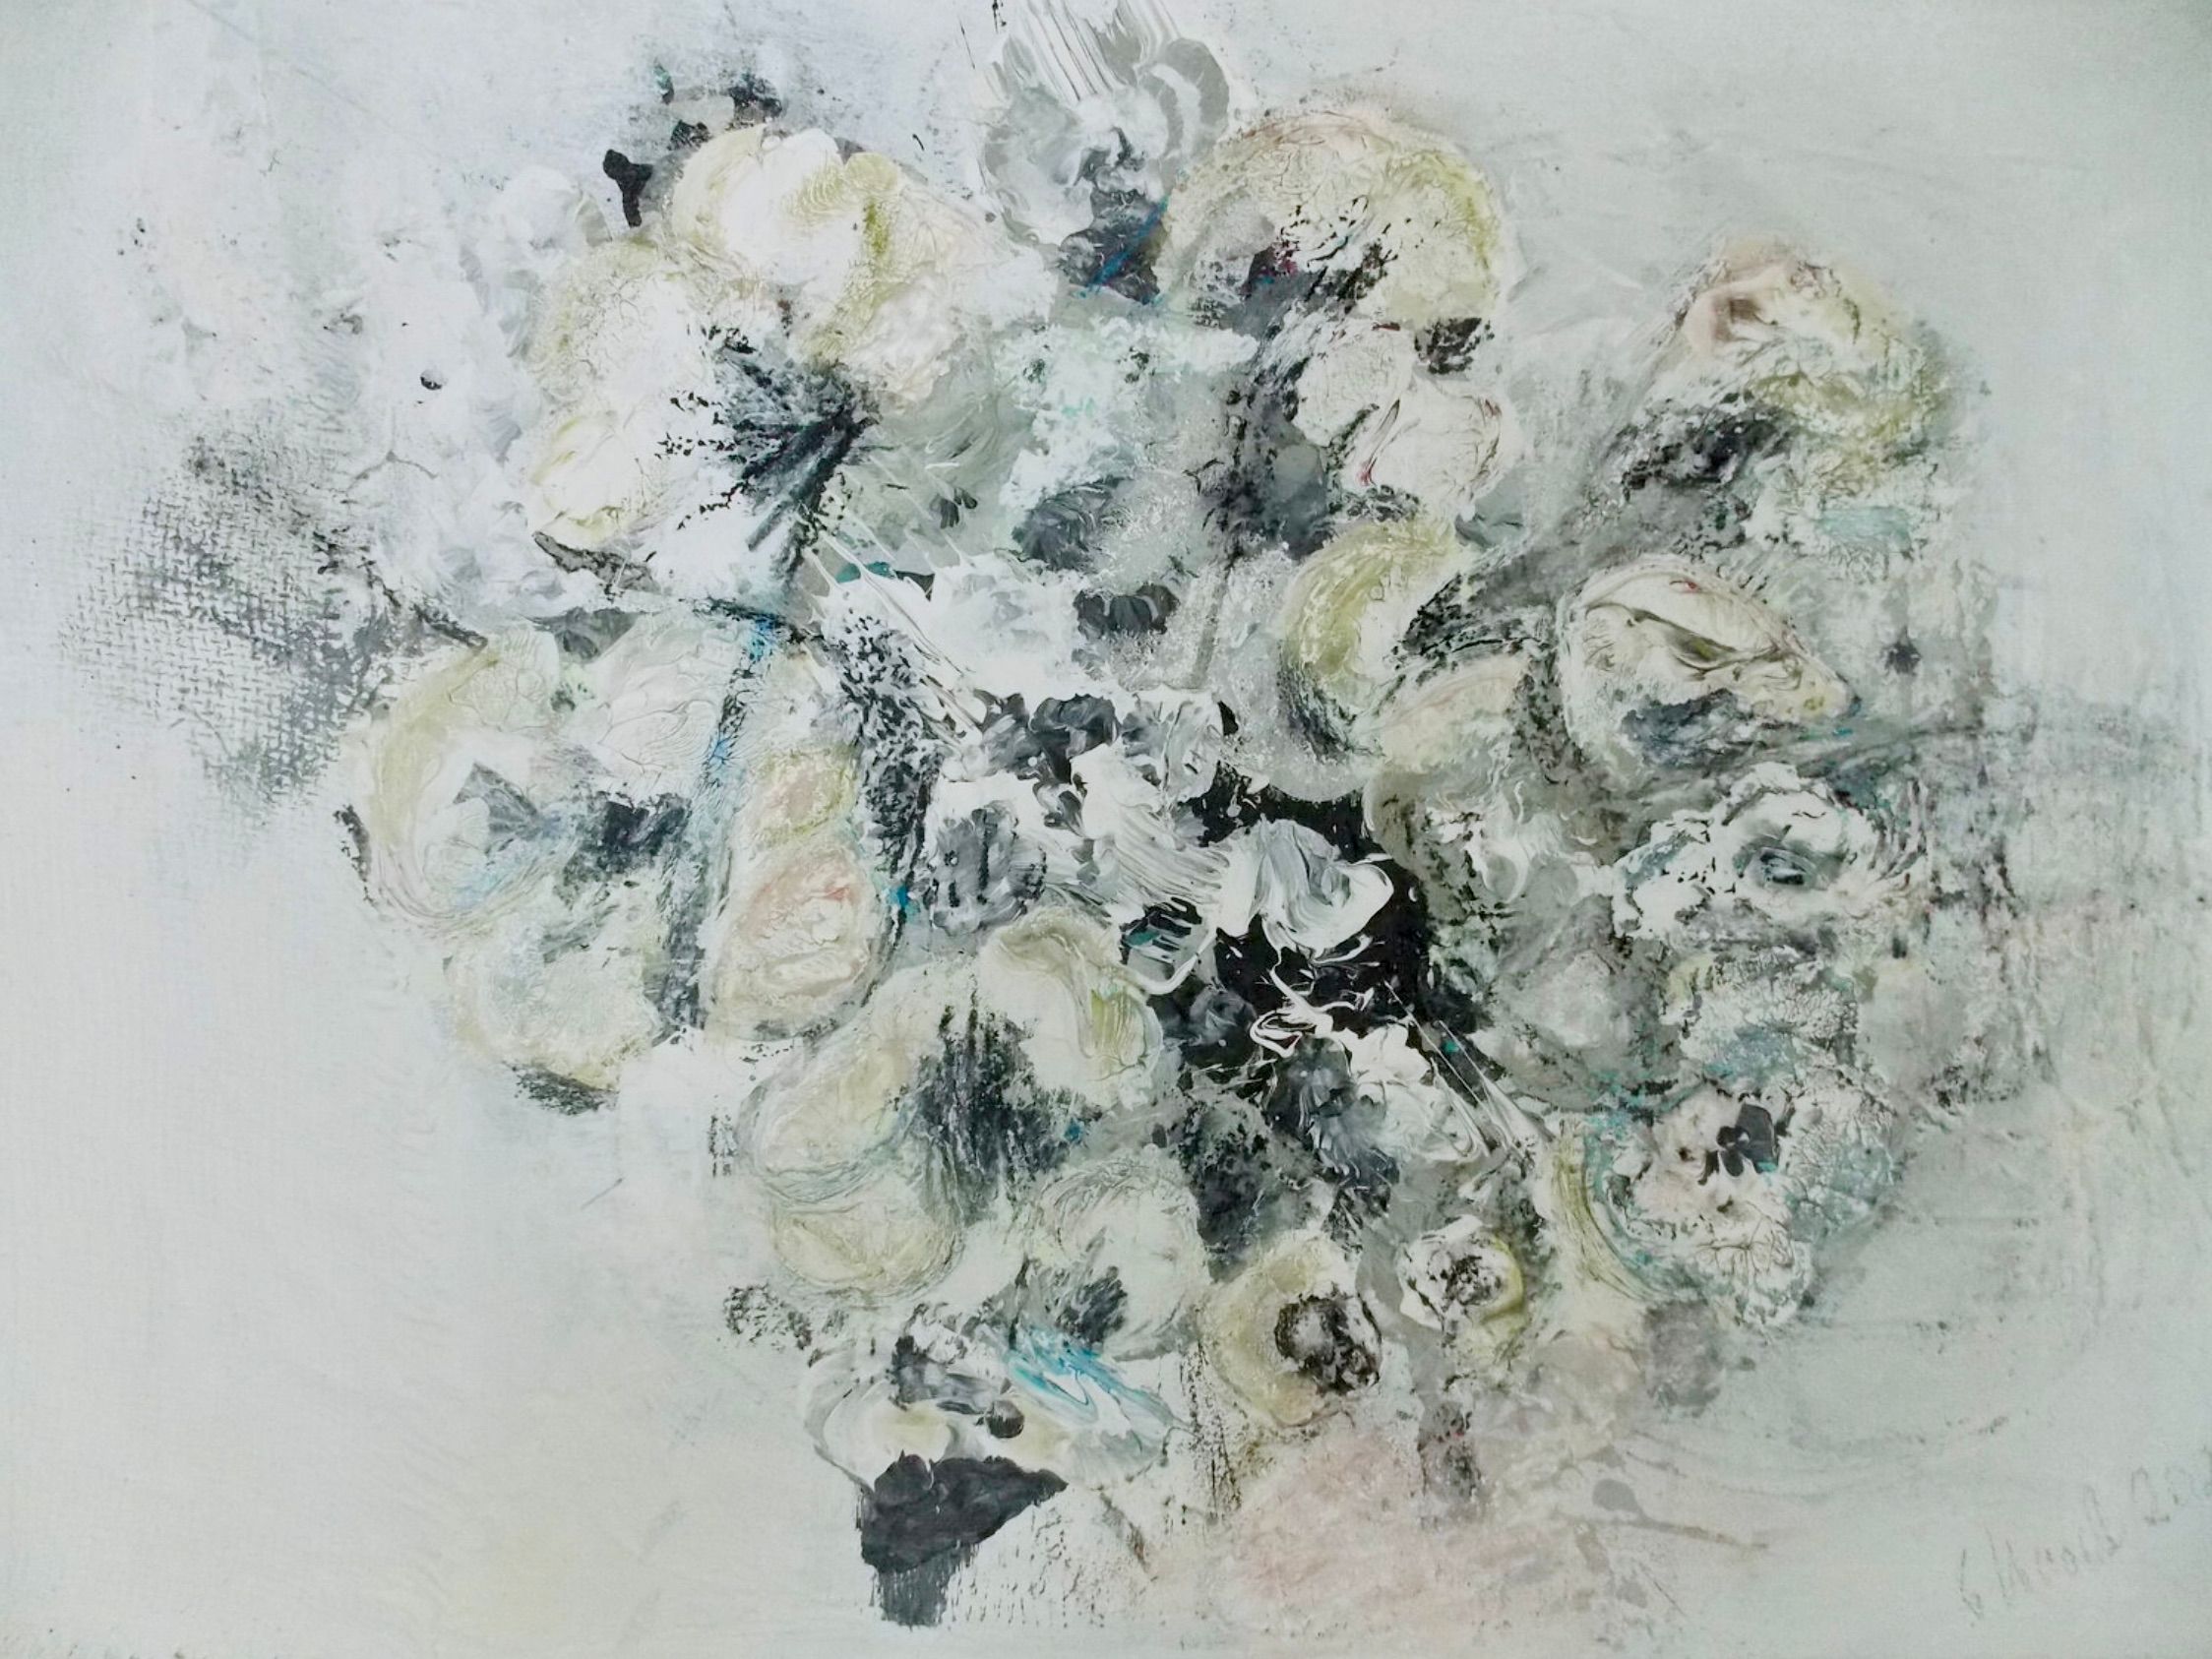 Dans "Im Rausch der Blumen 2" (L'ivresse des fleurs 2) de Christa Haack, la peinture florale expressionniste abstraite est dominée par les couleurs blanc, beige, vert et noir.